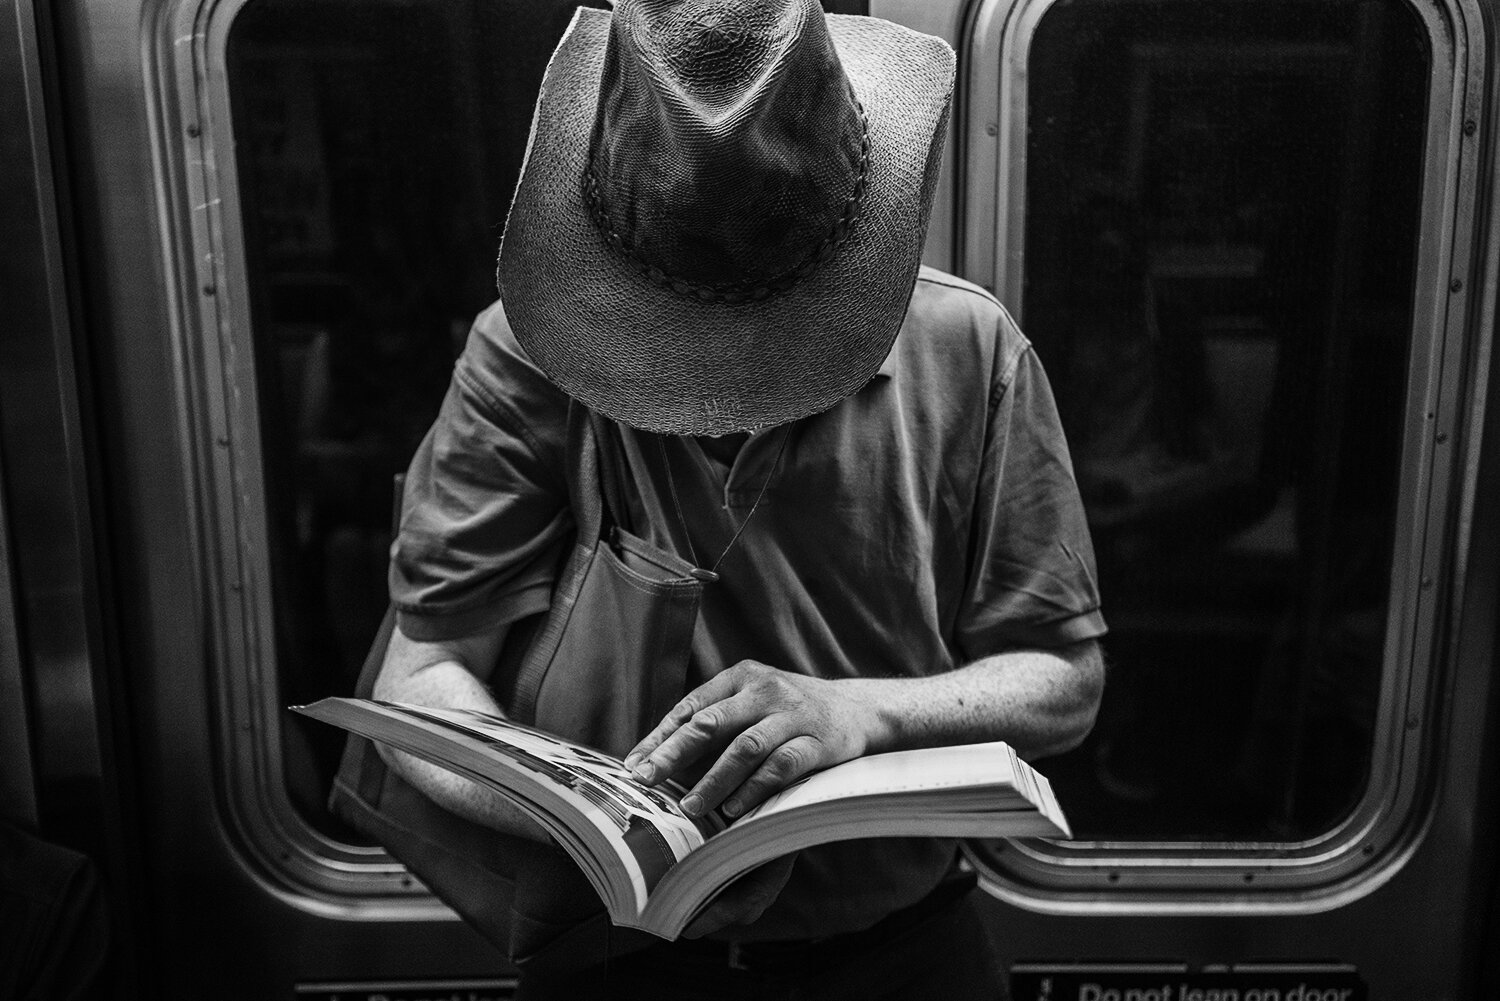 NYC_Subway_2018_Cowboy_Reading-016.jpg